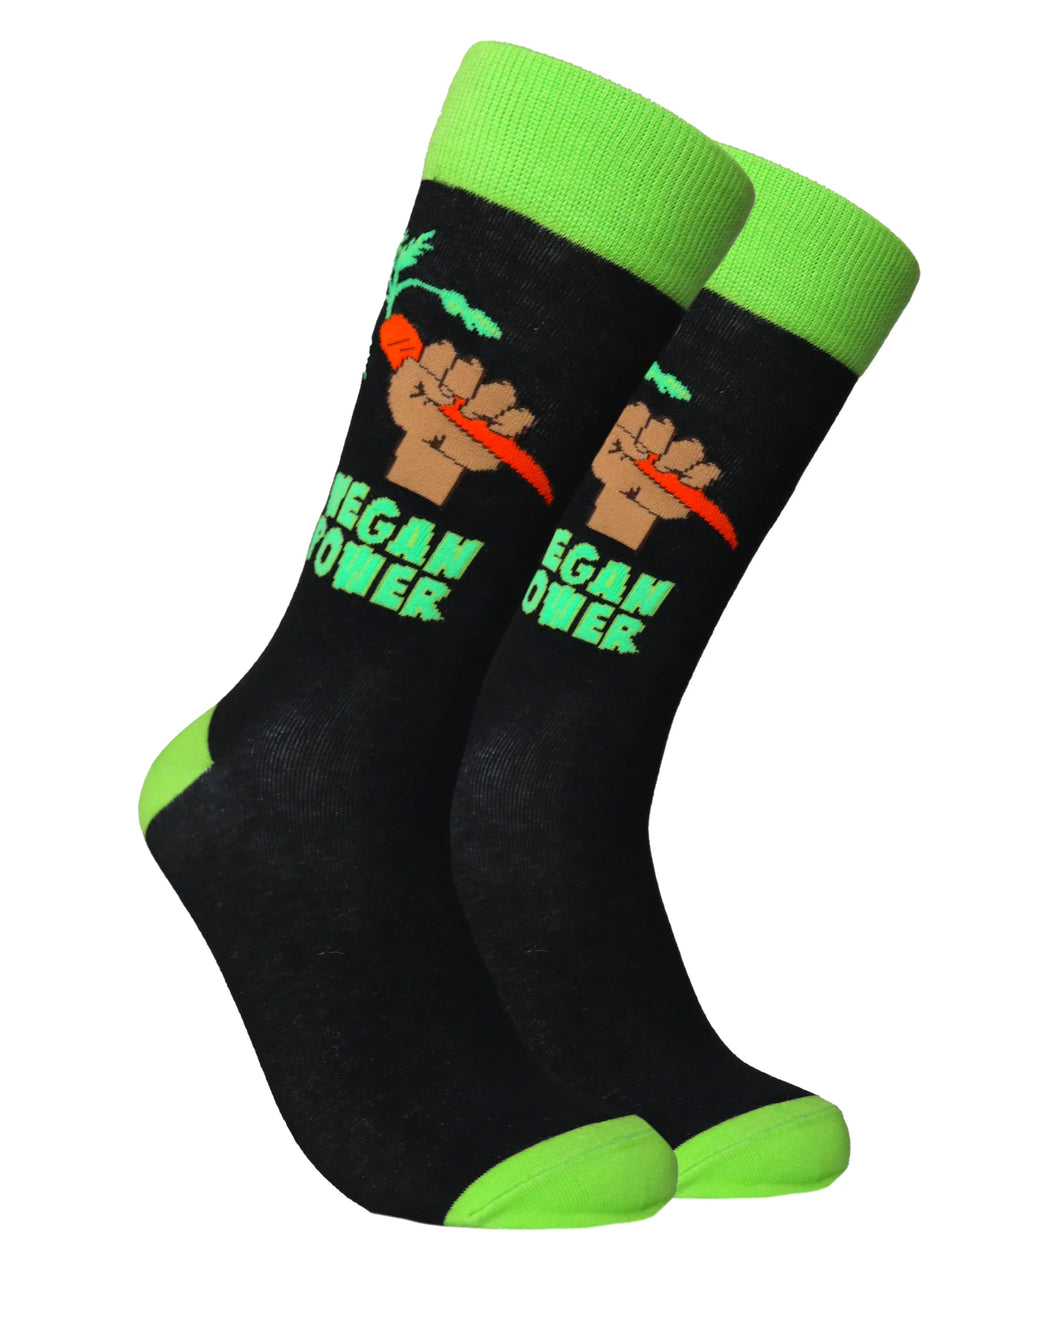 Vegan Power Socks by Soctopus